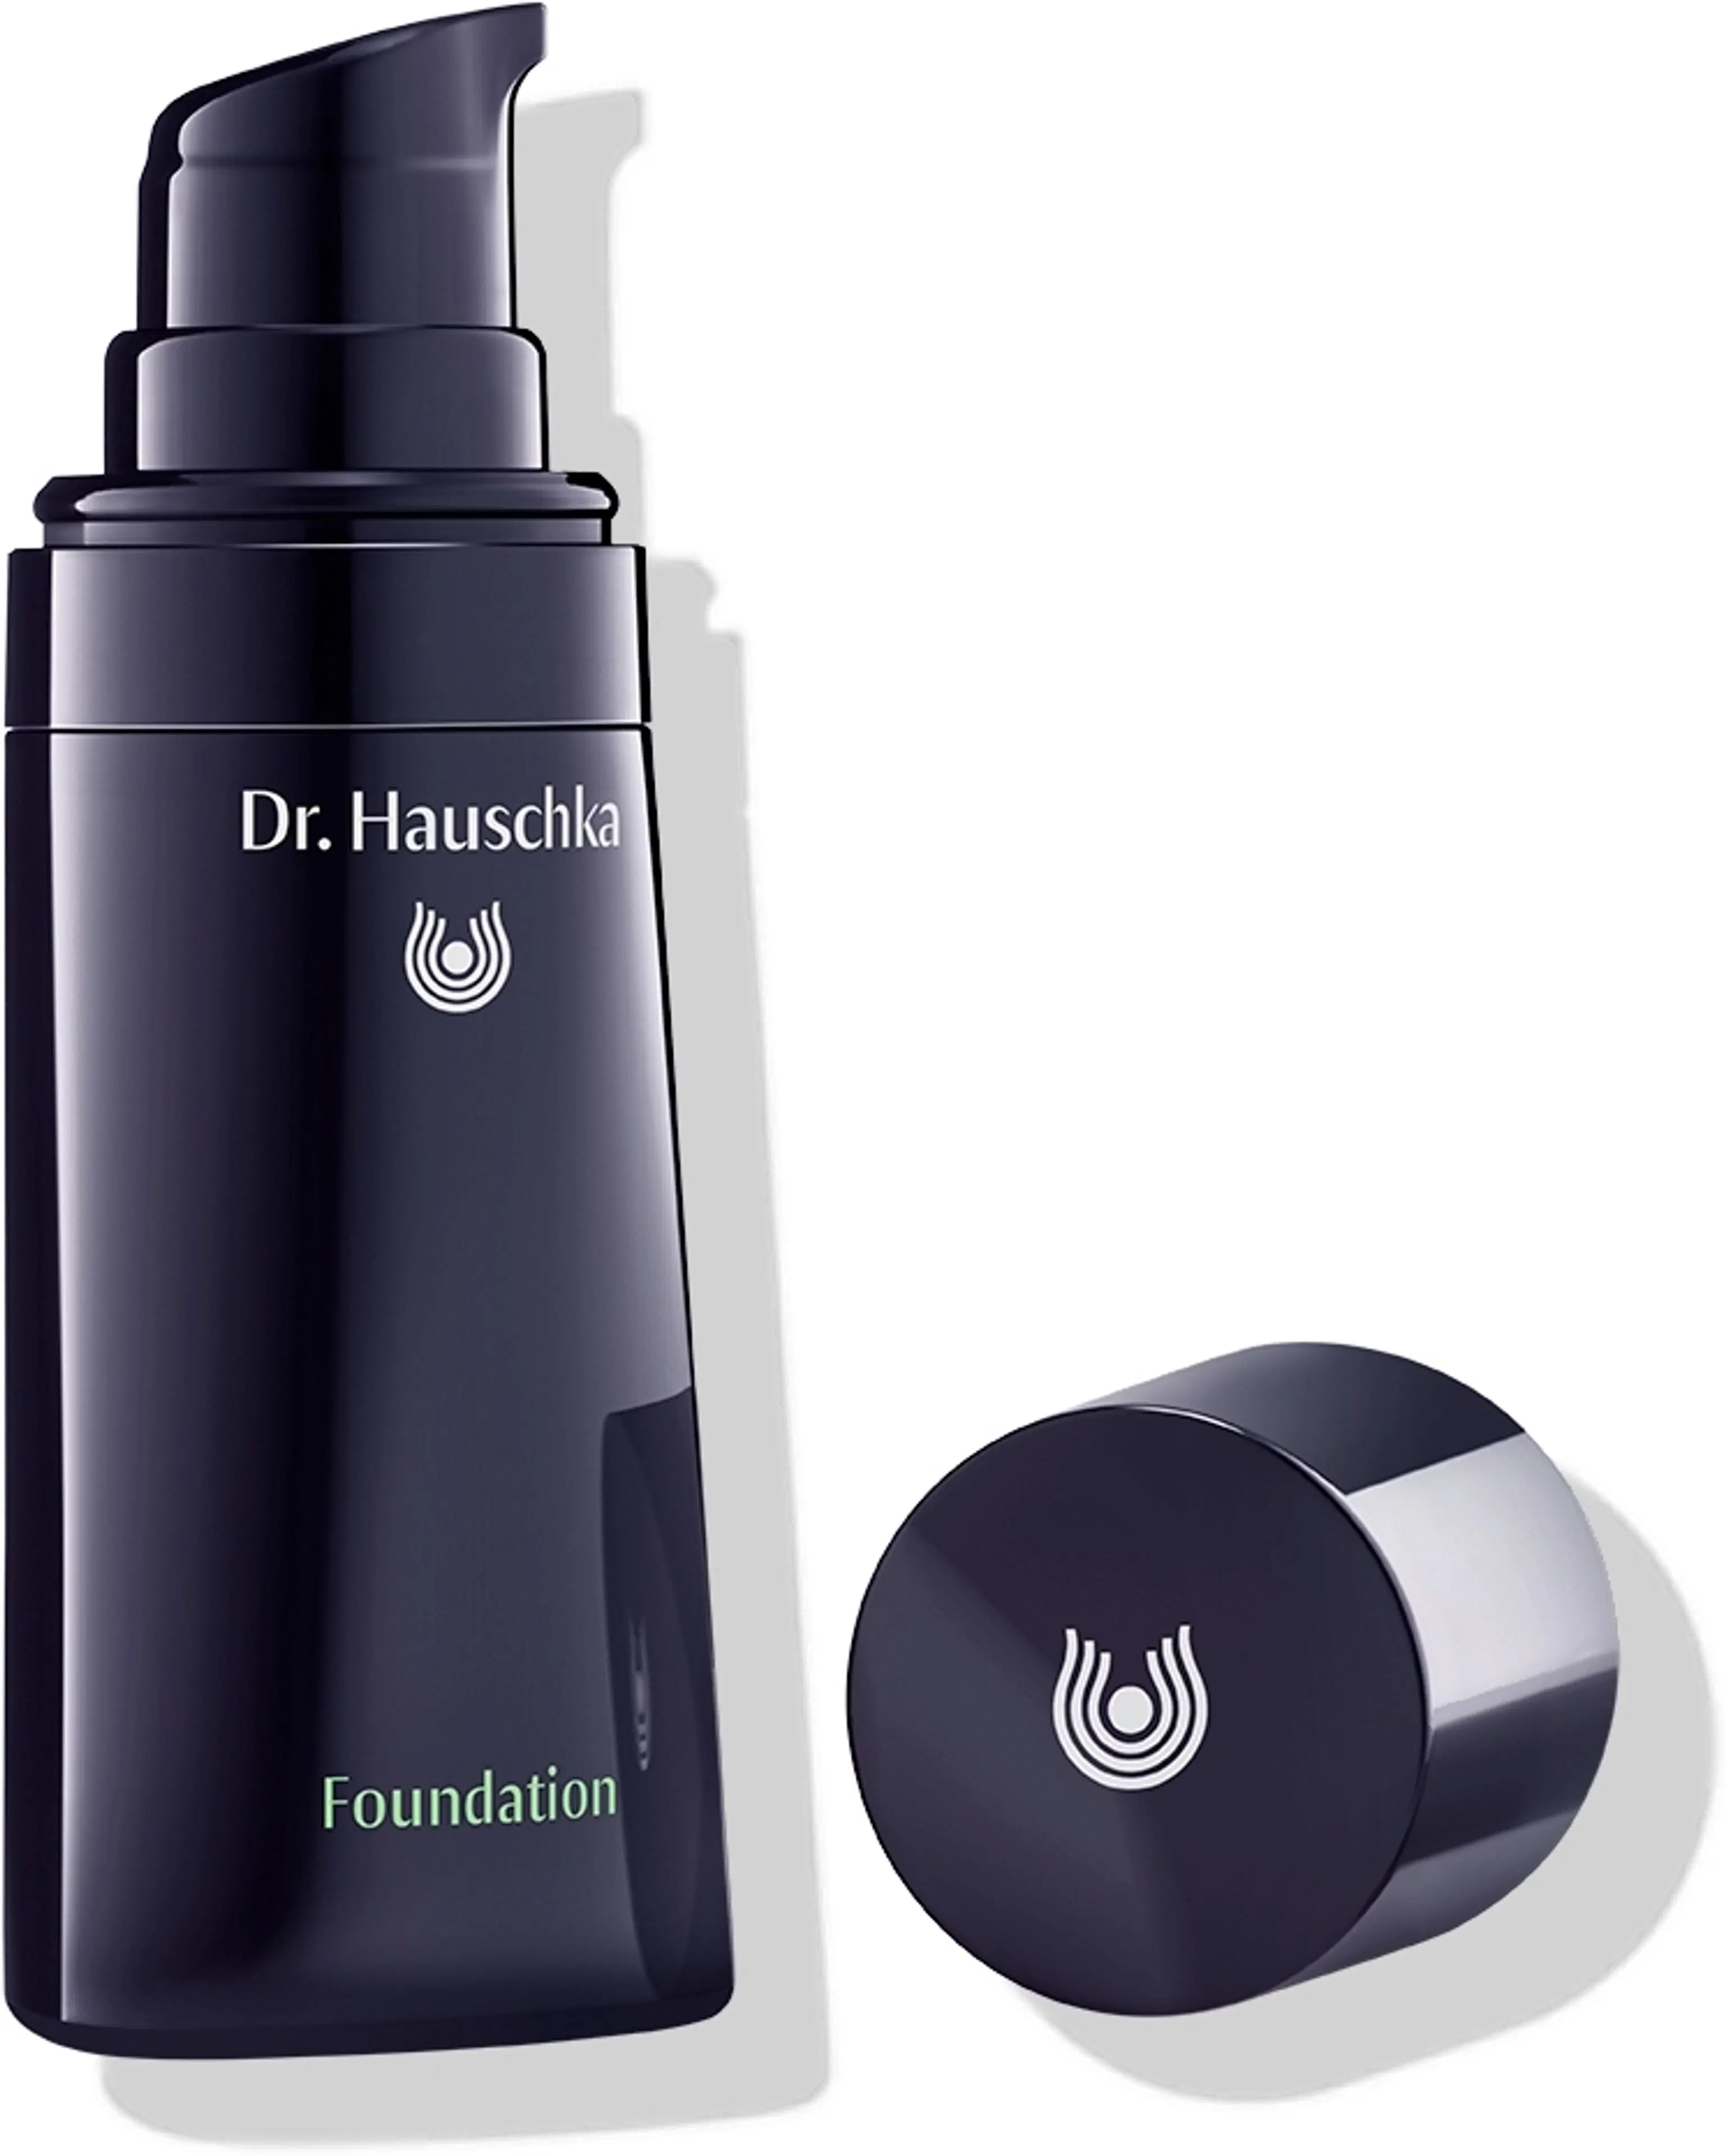 Dr. Hauschka Foundation meikkivoide 30 ml